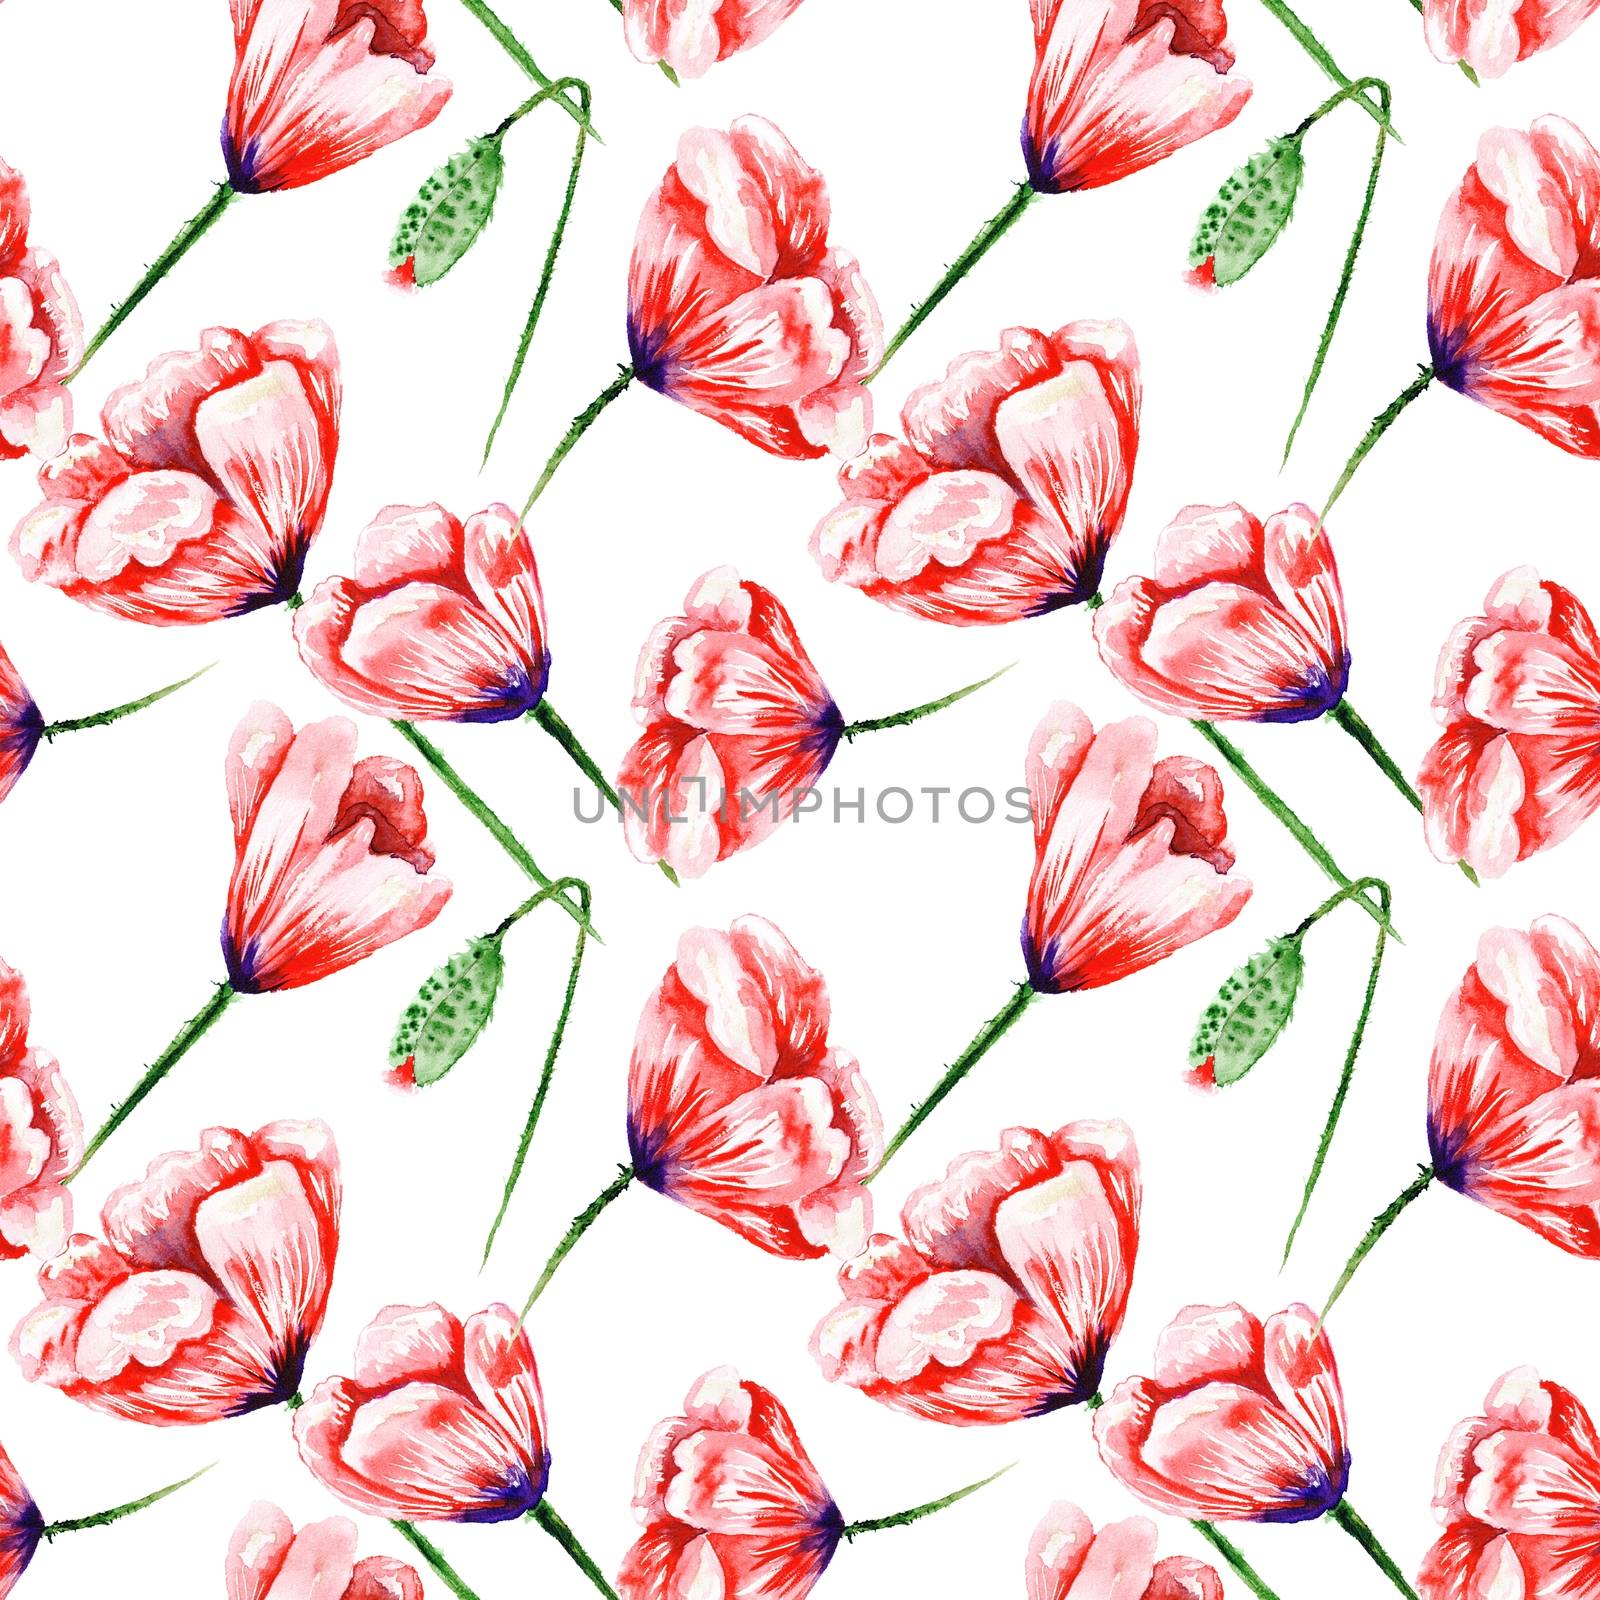 Poppy Pattern on White Background by kisika